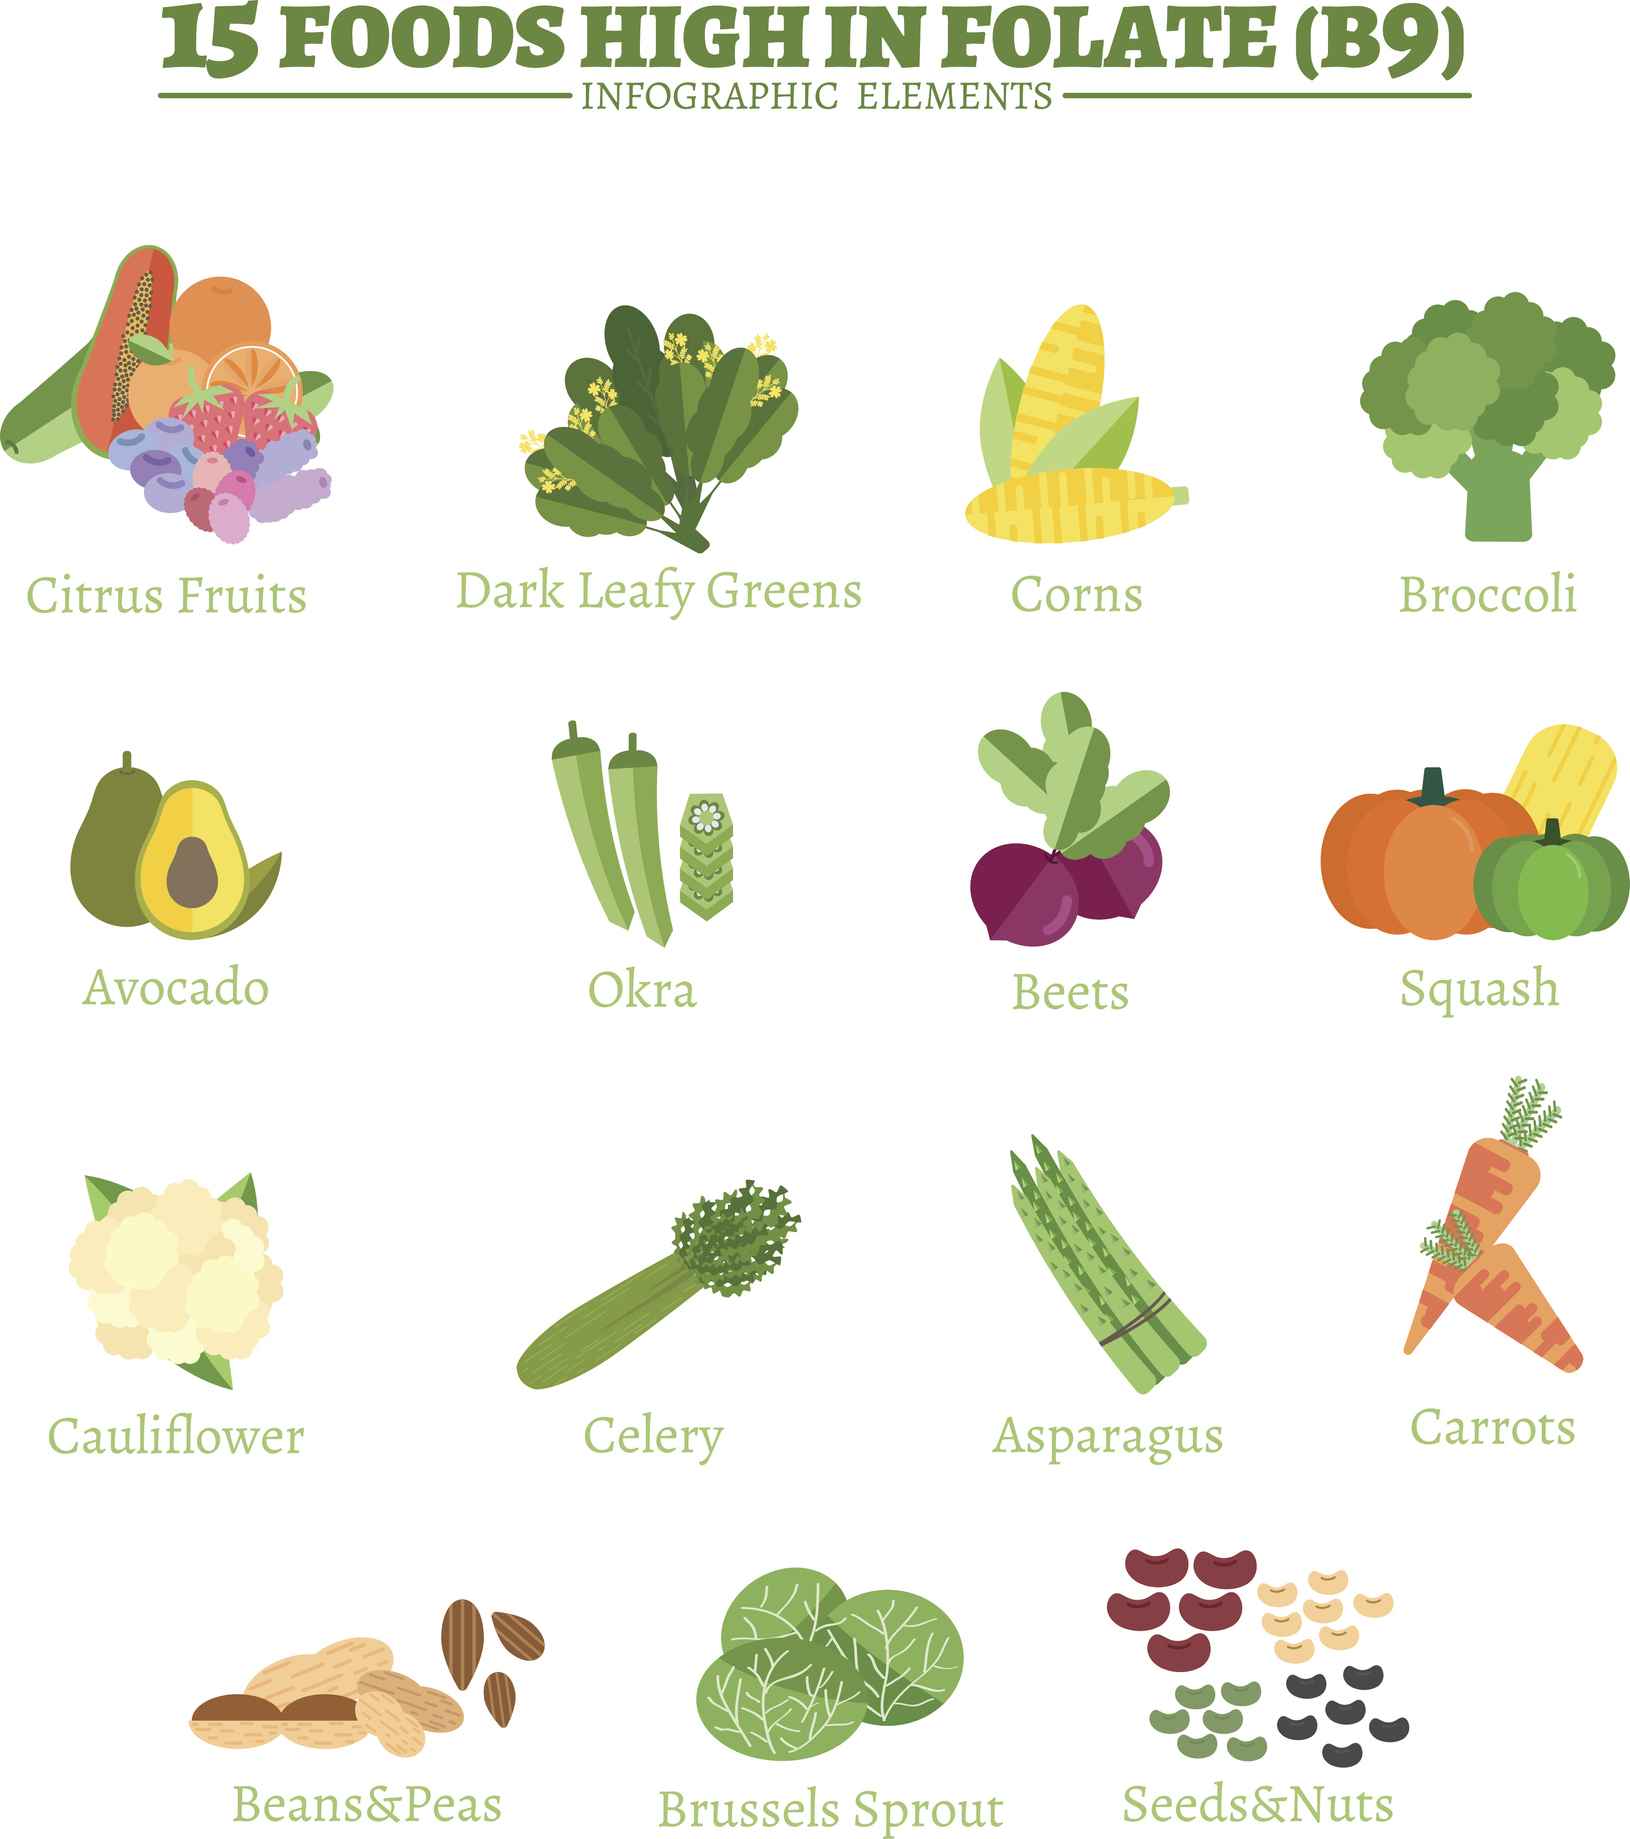 Medzi významné zdroje vitamínu B9 patrí citrusové ovocie, tmavo-zeleno listová zelenina, kukurica, brokolica, avokádo, okra, červená repa, šťavy, karfiol, zeler, špargľa, mrkva, fazuľa a hrach, ružičkový kel, semiačka a orechy. Zdroj foto: Getty Images